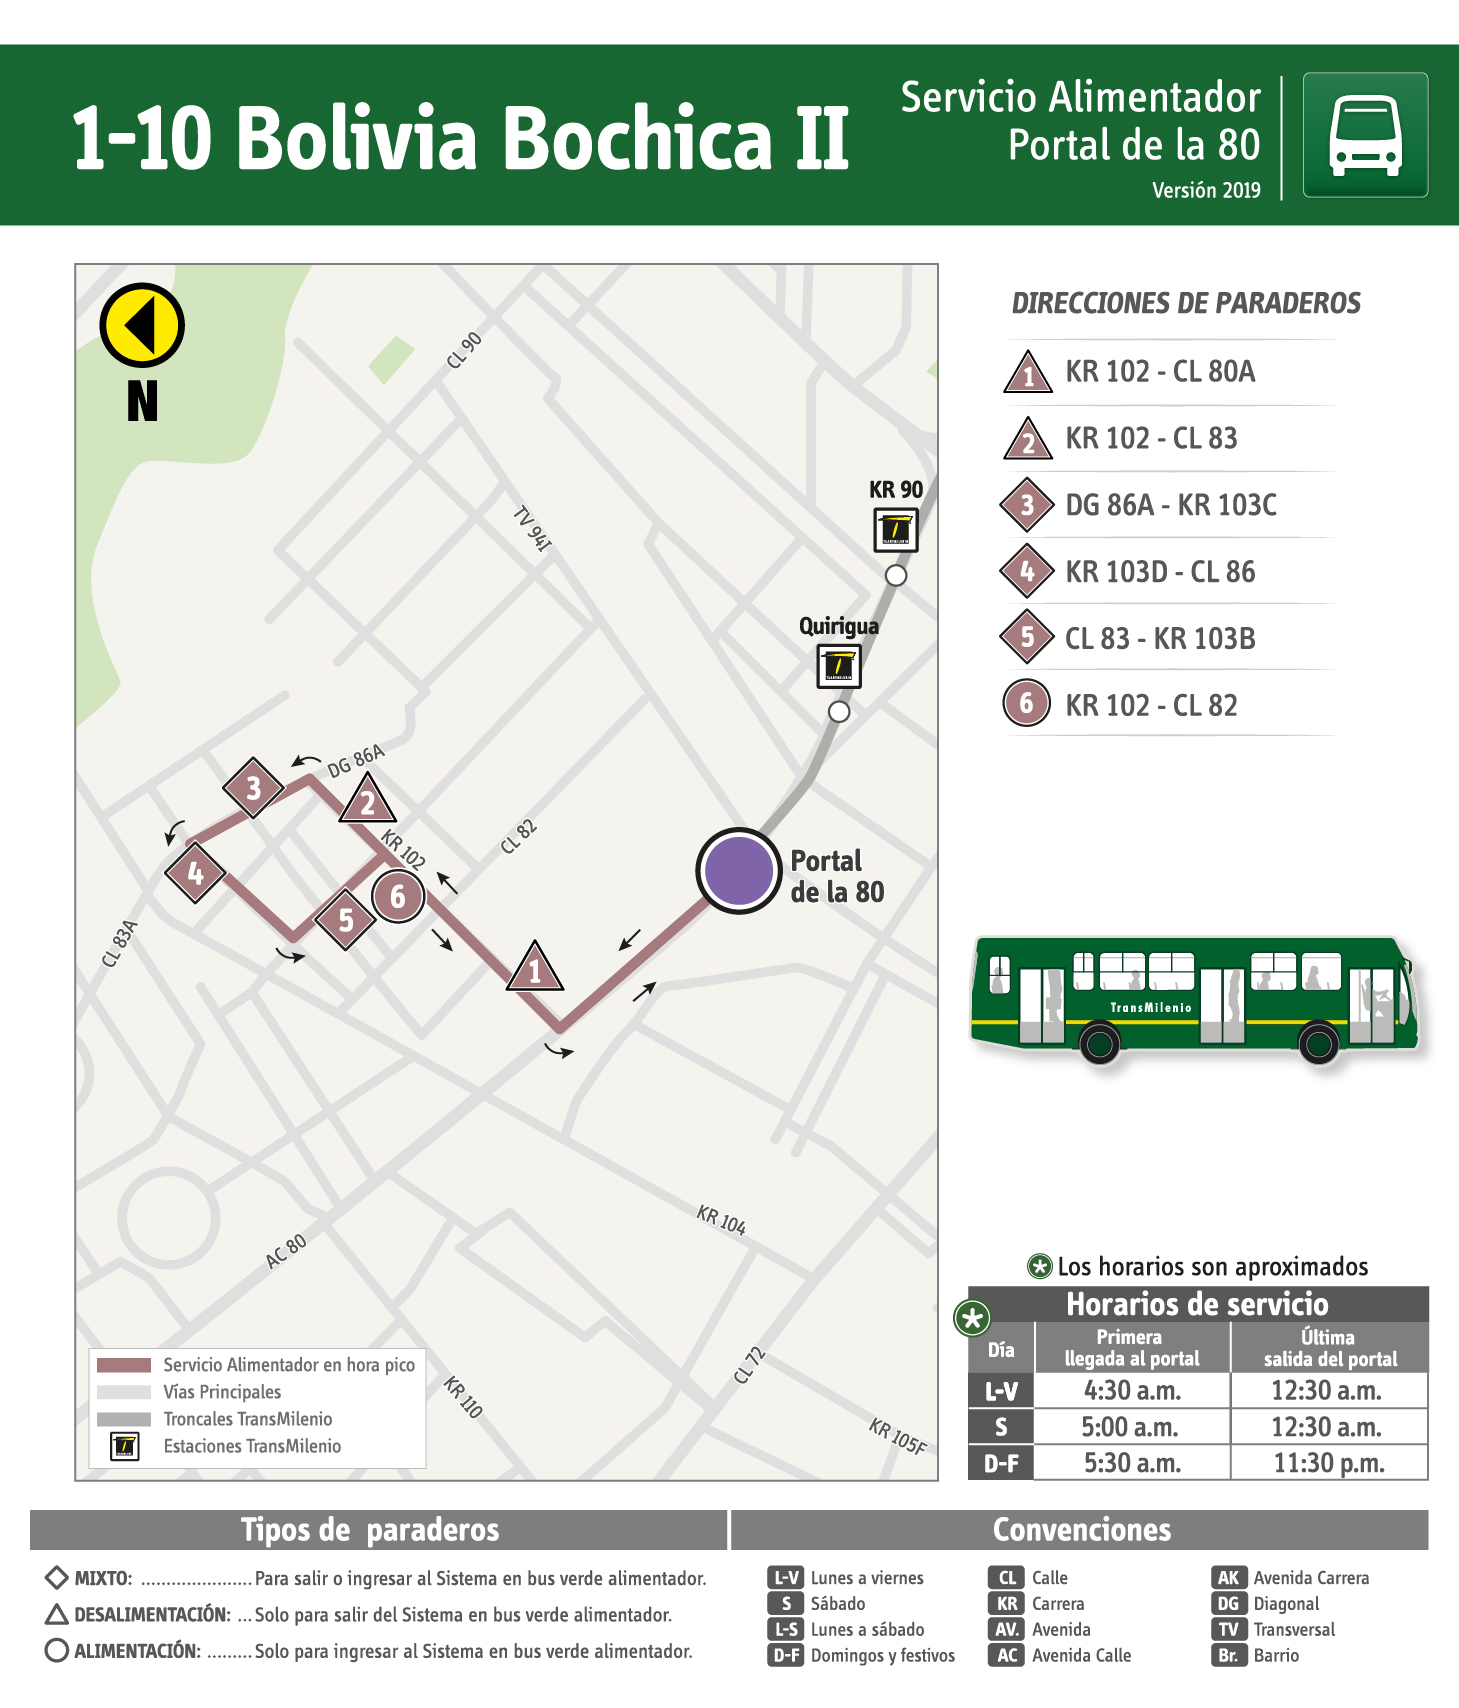 Plegable de la ruta 1-10 Bolivia Bochica II